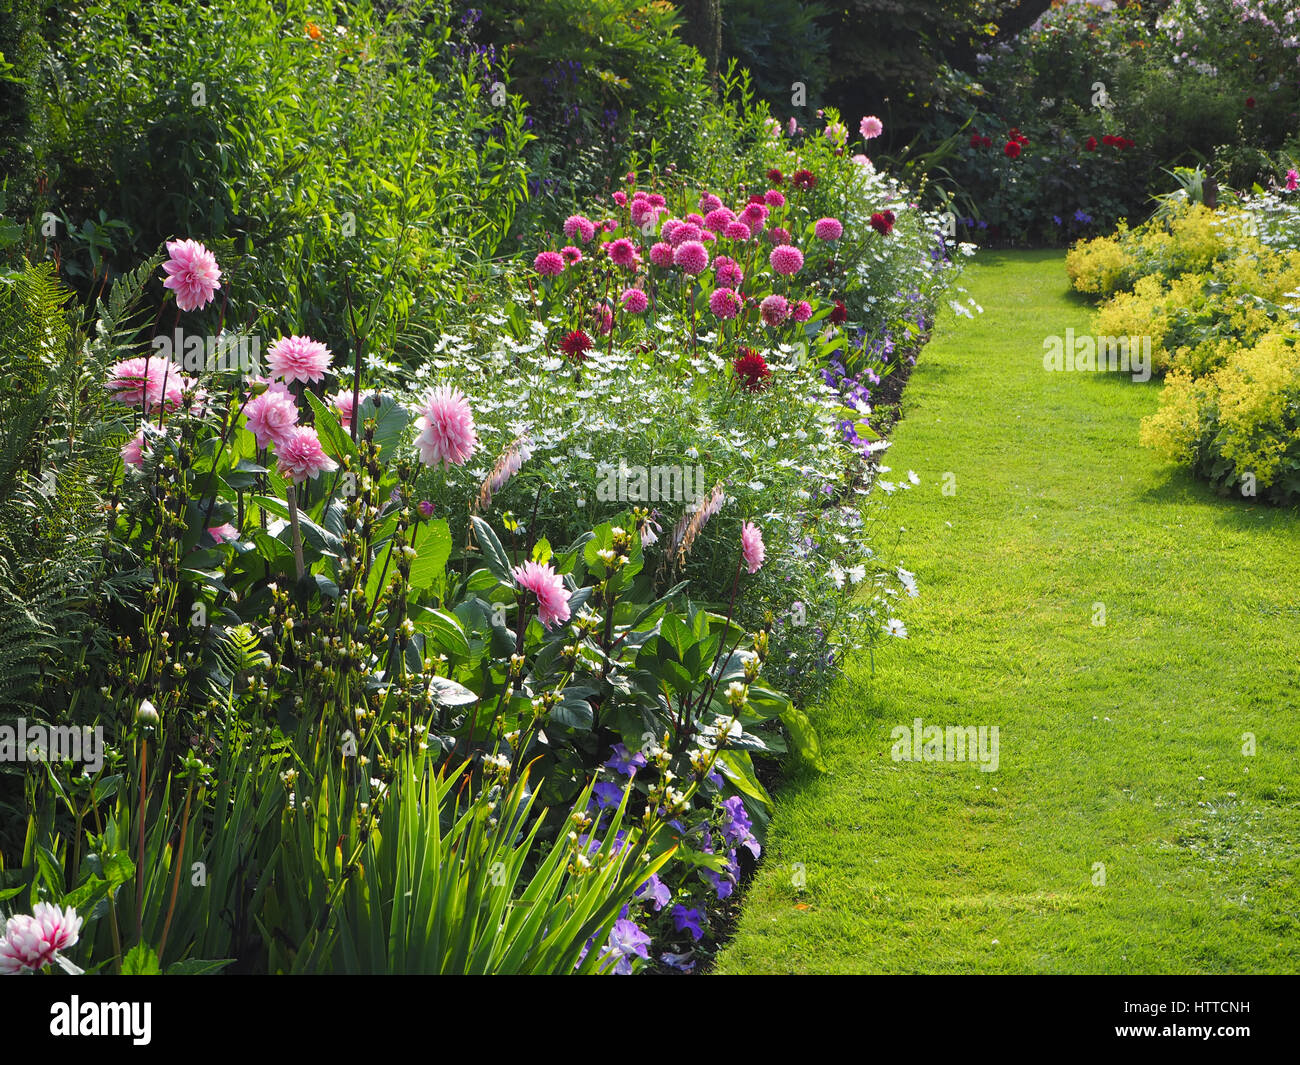 Chenies Manor versunkene Garten im Juli. Lebendige rosa Dahlien, Zierteich, Laub, Rasen und verschiedenen Schattierungen von Grün in der späten Nachmittagssonne. Stockfoto